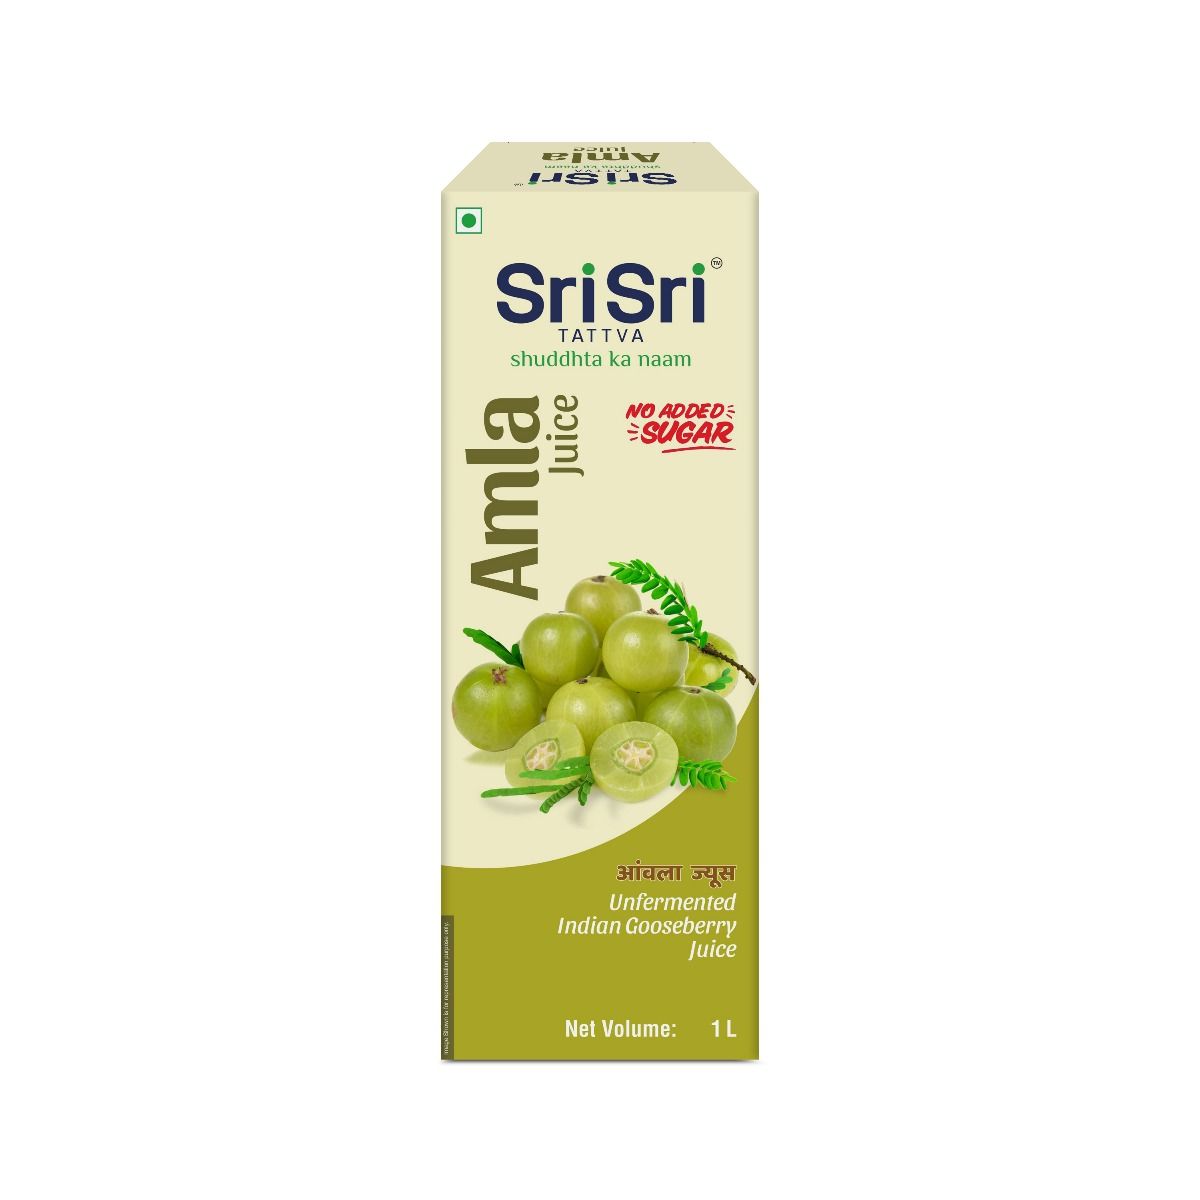 Sri Sri Tattva Amla Juice, 1000 ml, Pack of 1 